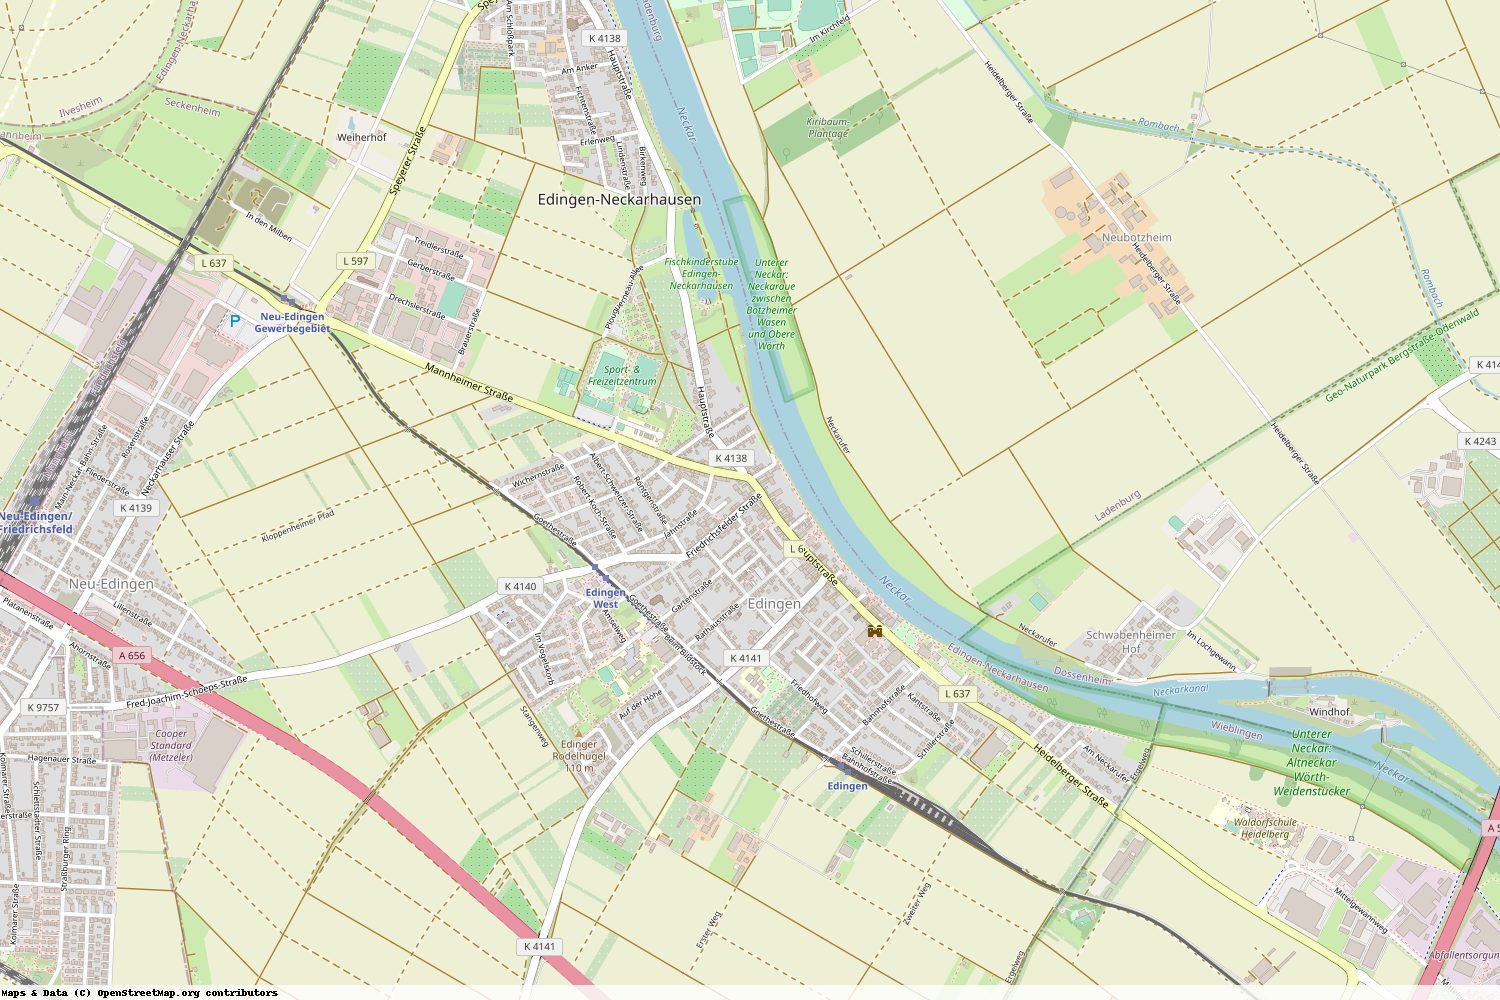 Ist gerade Stromausfall in Baden-Württemberg - Rhein-Neckar-Kreis - Edingen-Neckarhausen?